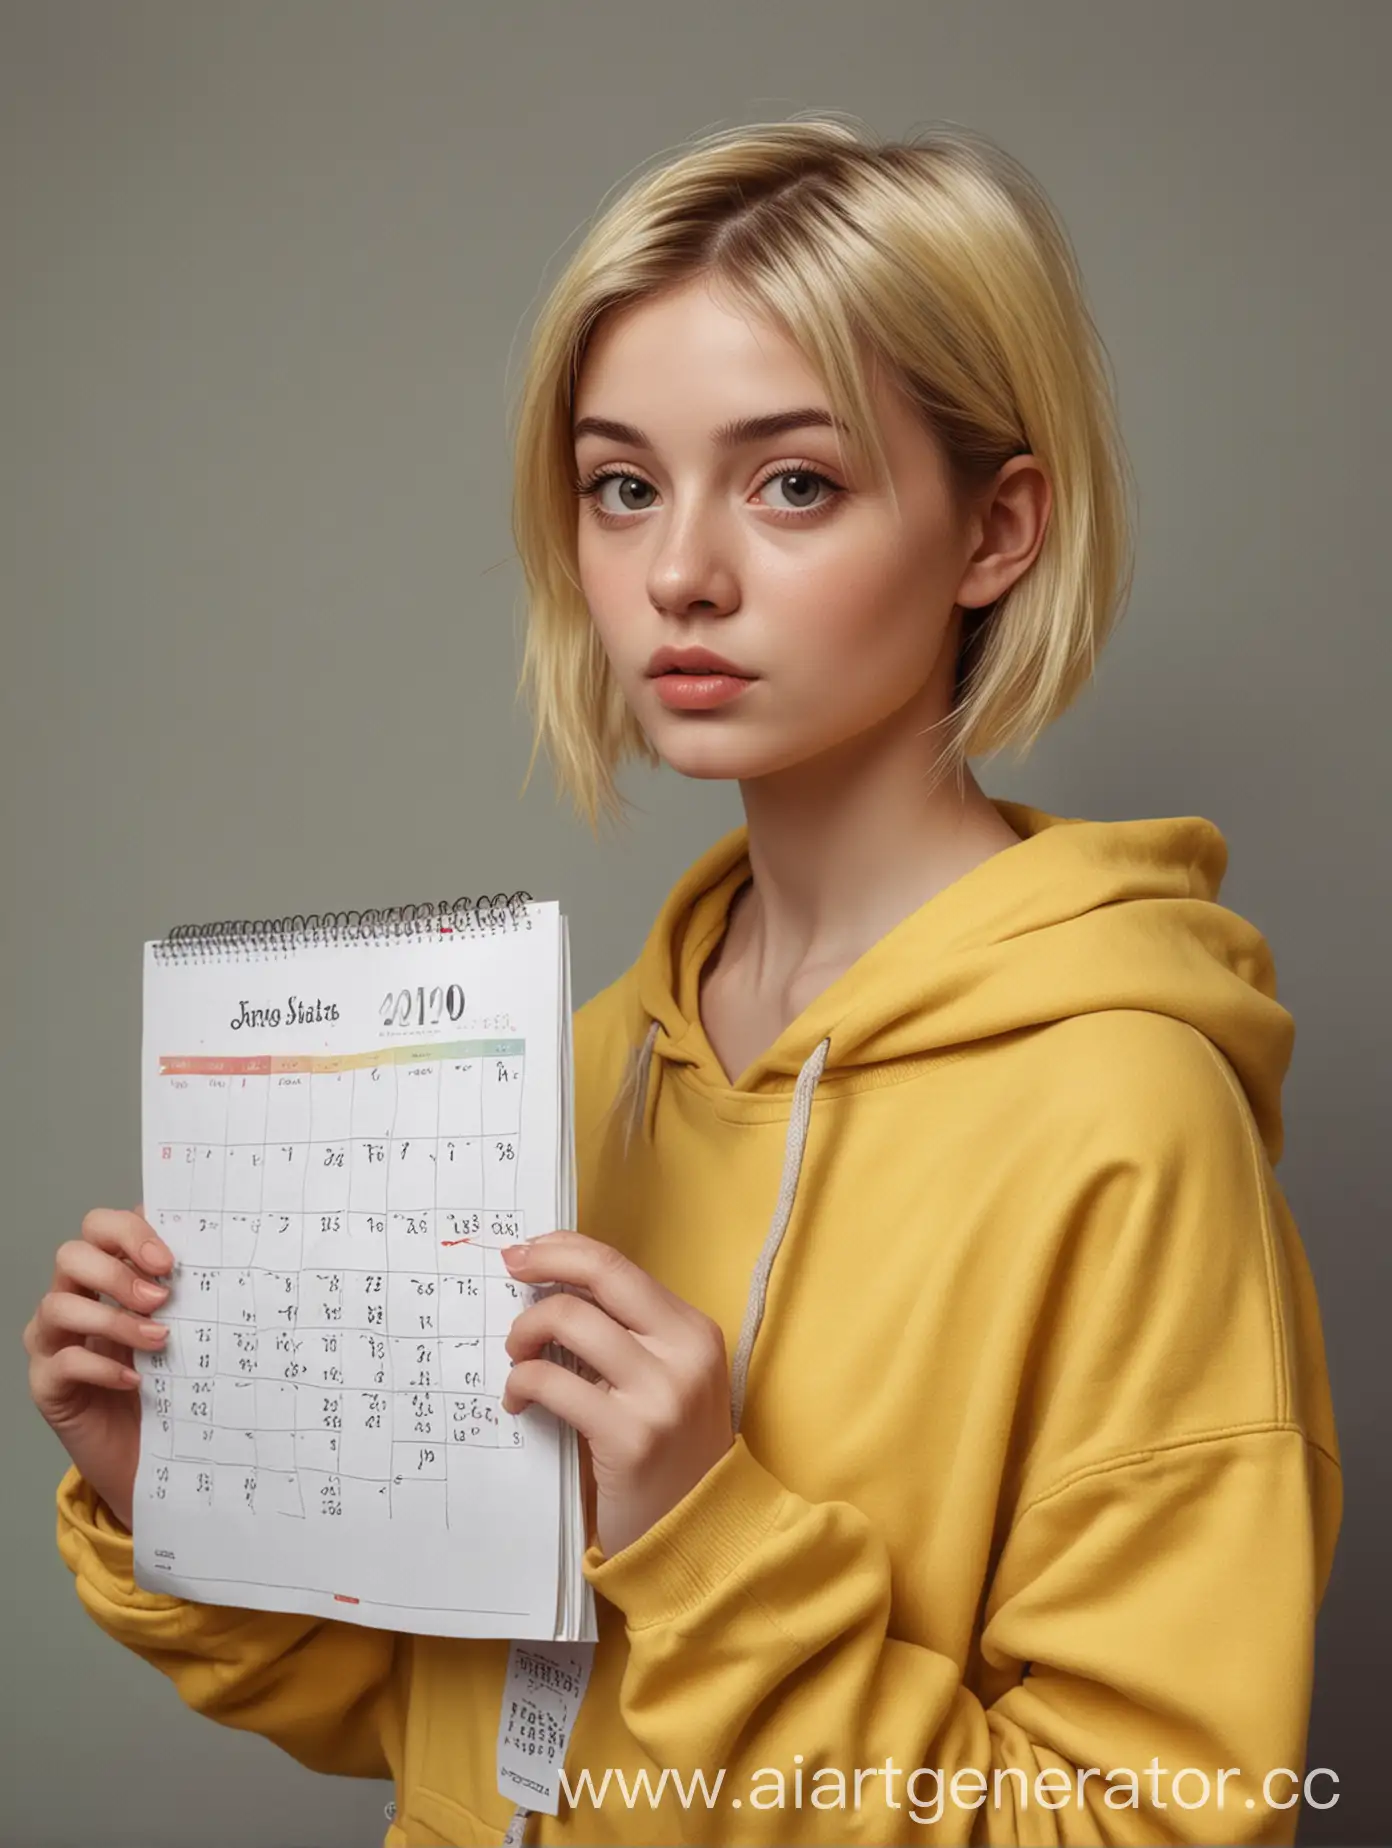 Девушка в желтой толстовке держит в руках календарь, короткие волосы, реализм